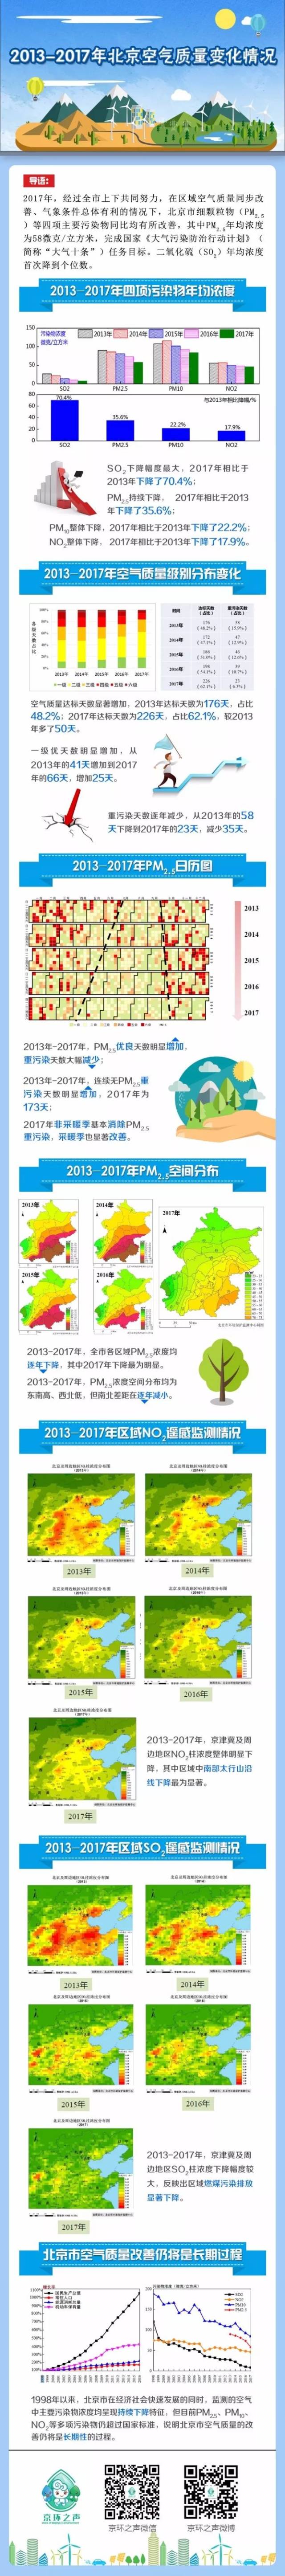 一图读懂20132017年北京空气质量变化状况